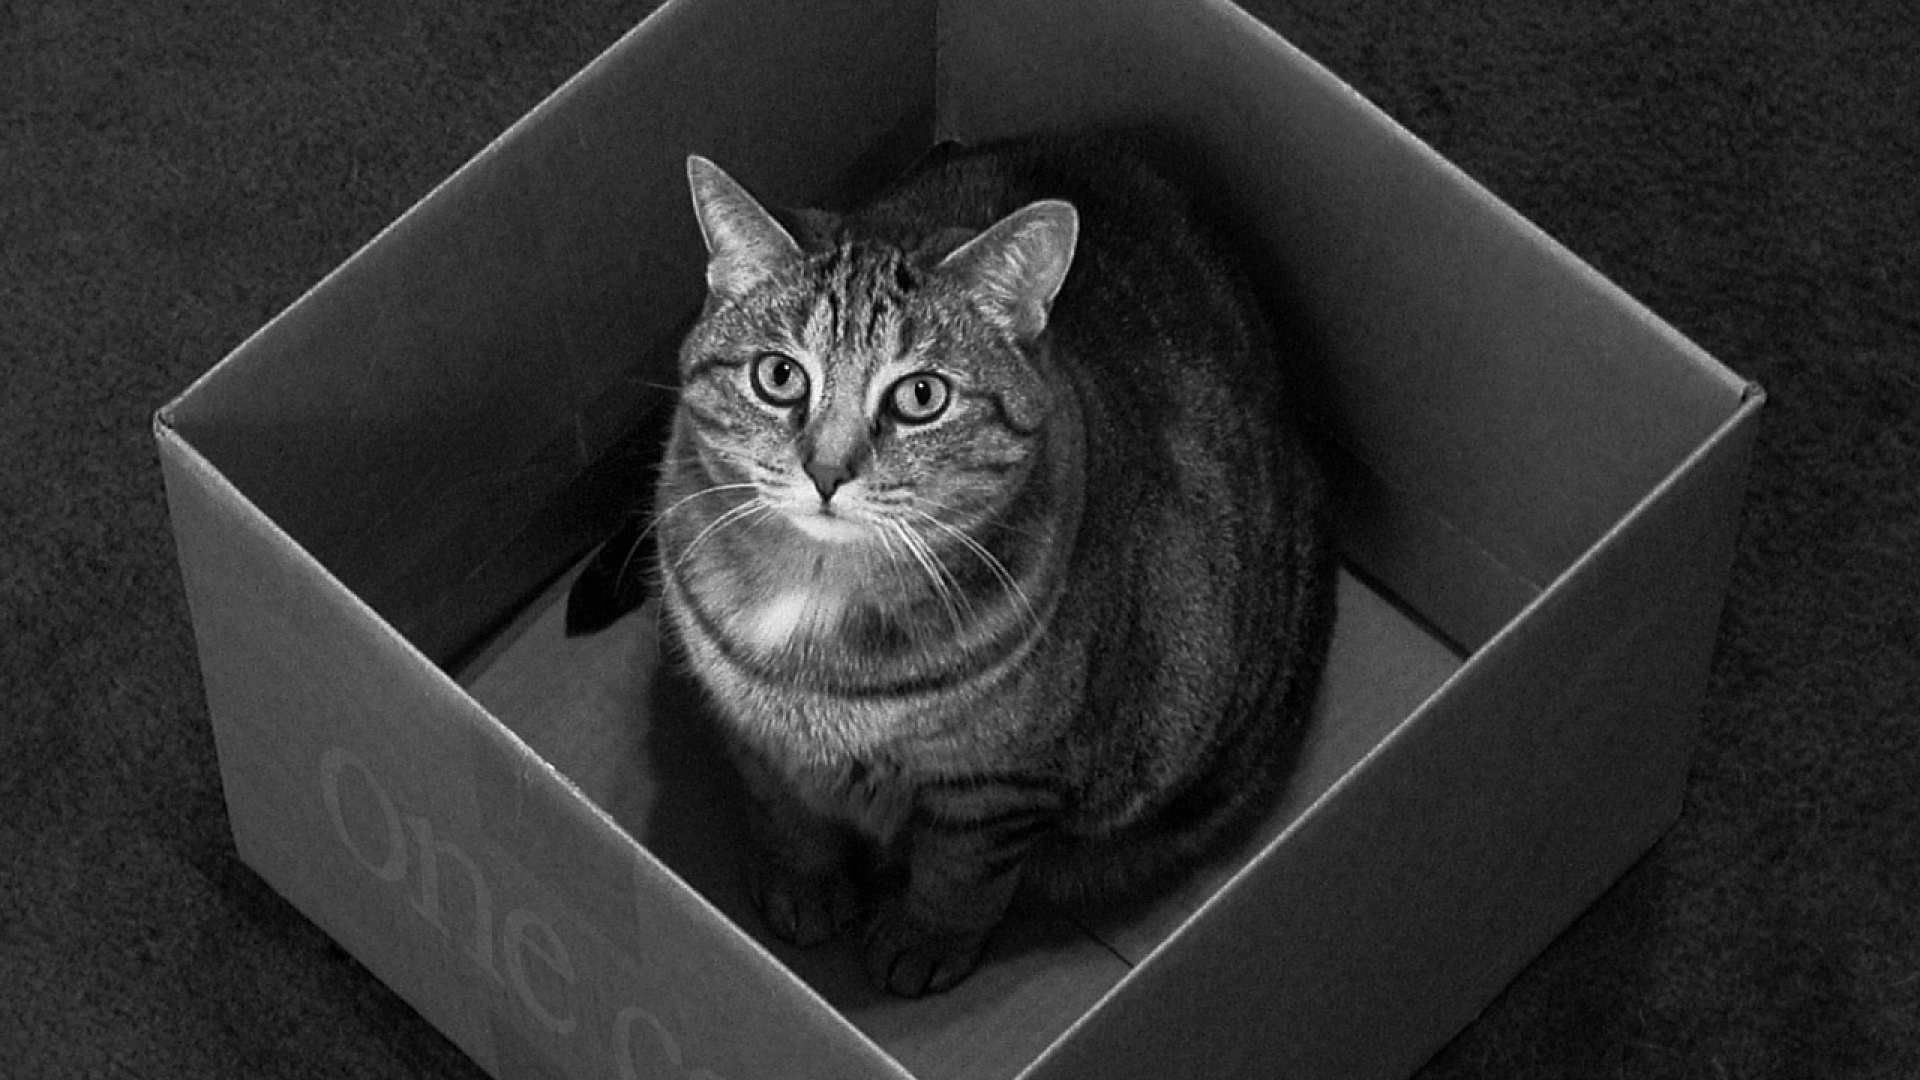 Fond d'ecran Cat in the box